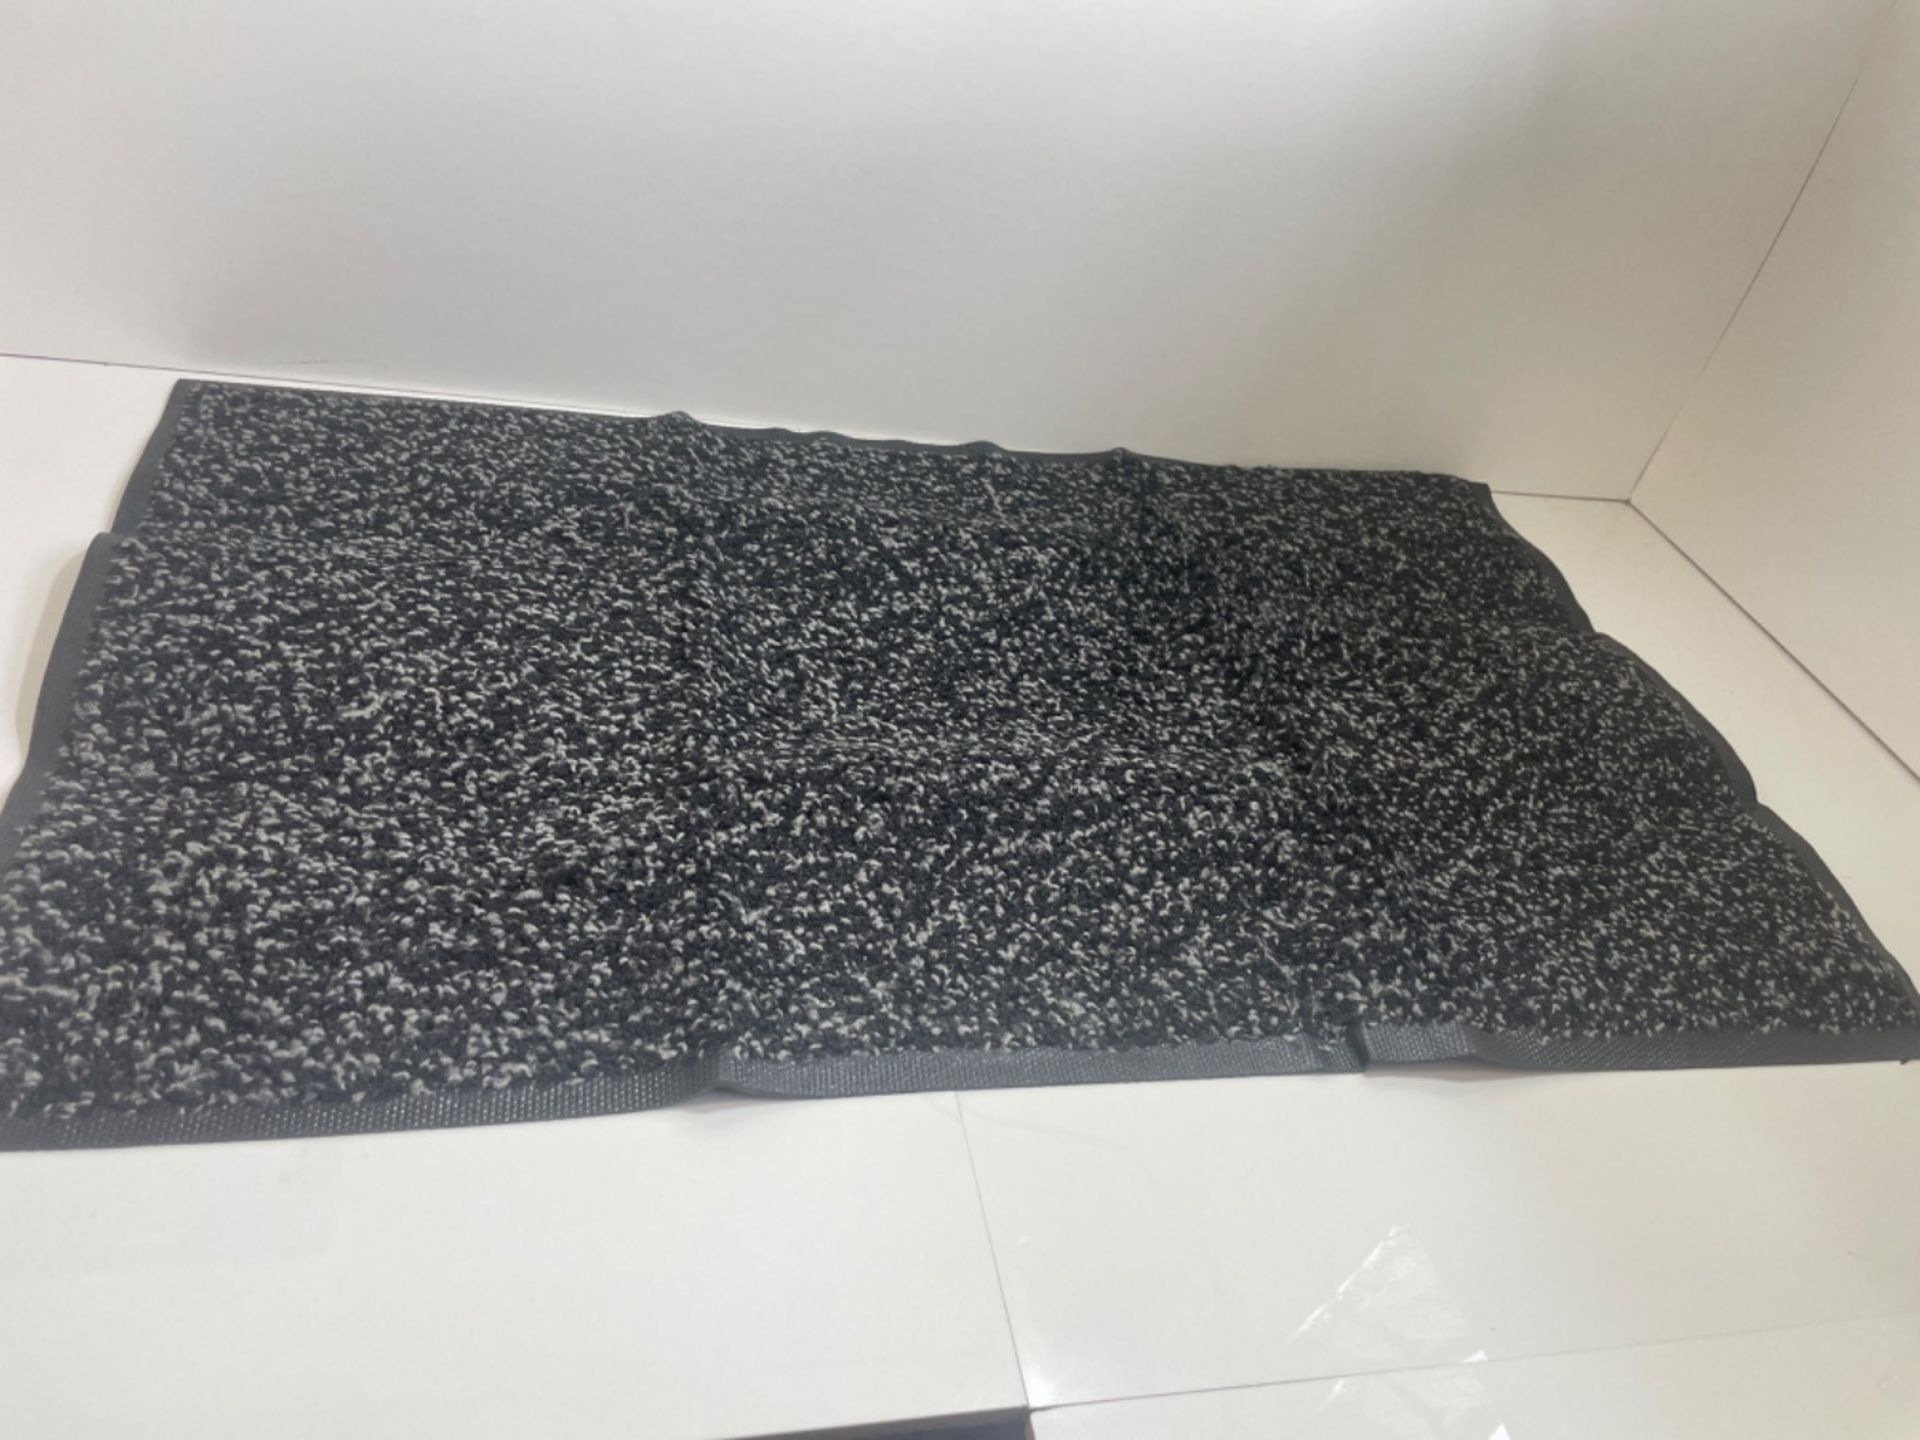 Mibao Door Mat Dirt Trapper for Indoor and Outdoor, 51.5x81.5 Cm, Black Doormat, Washable Barrier M - Image 2 of 3